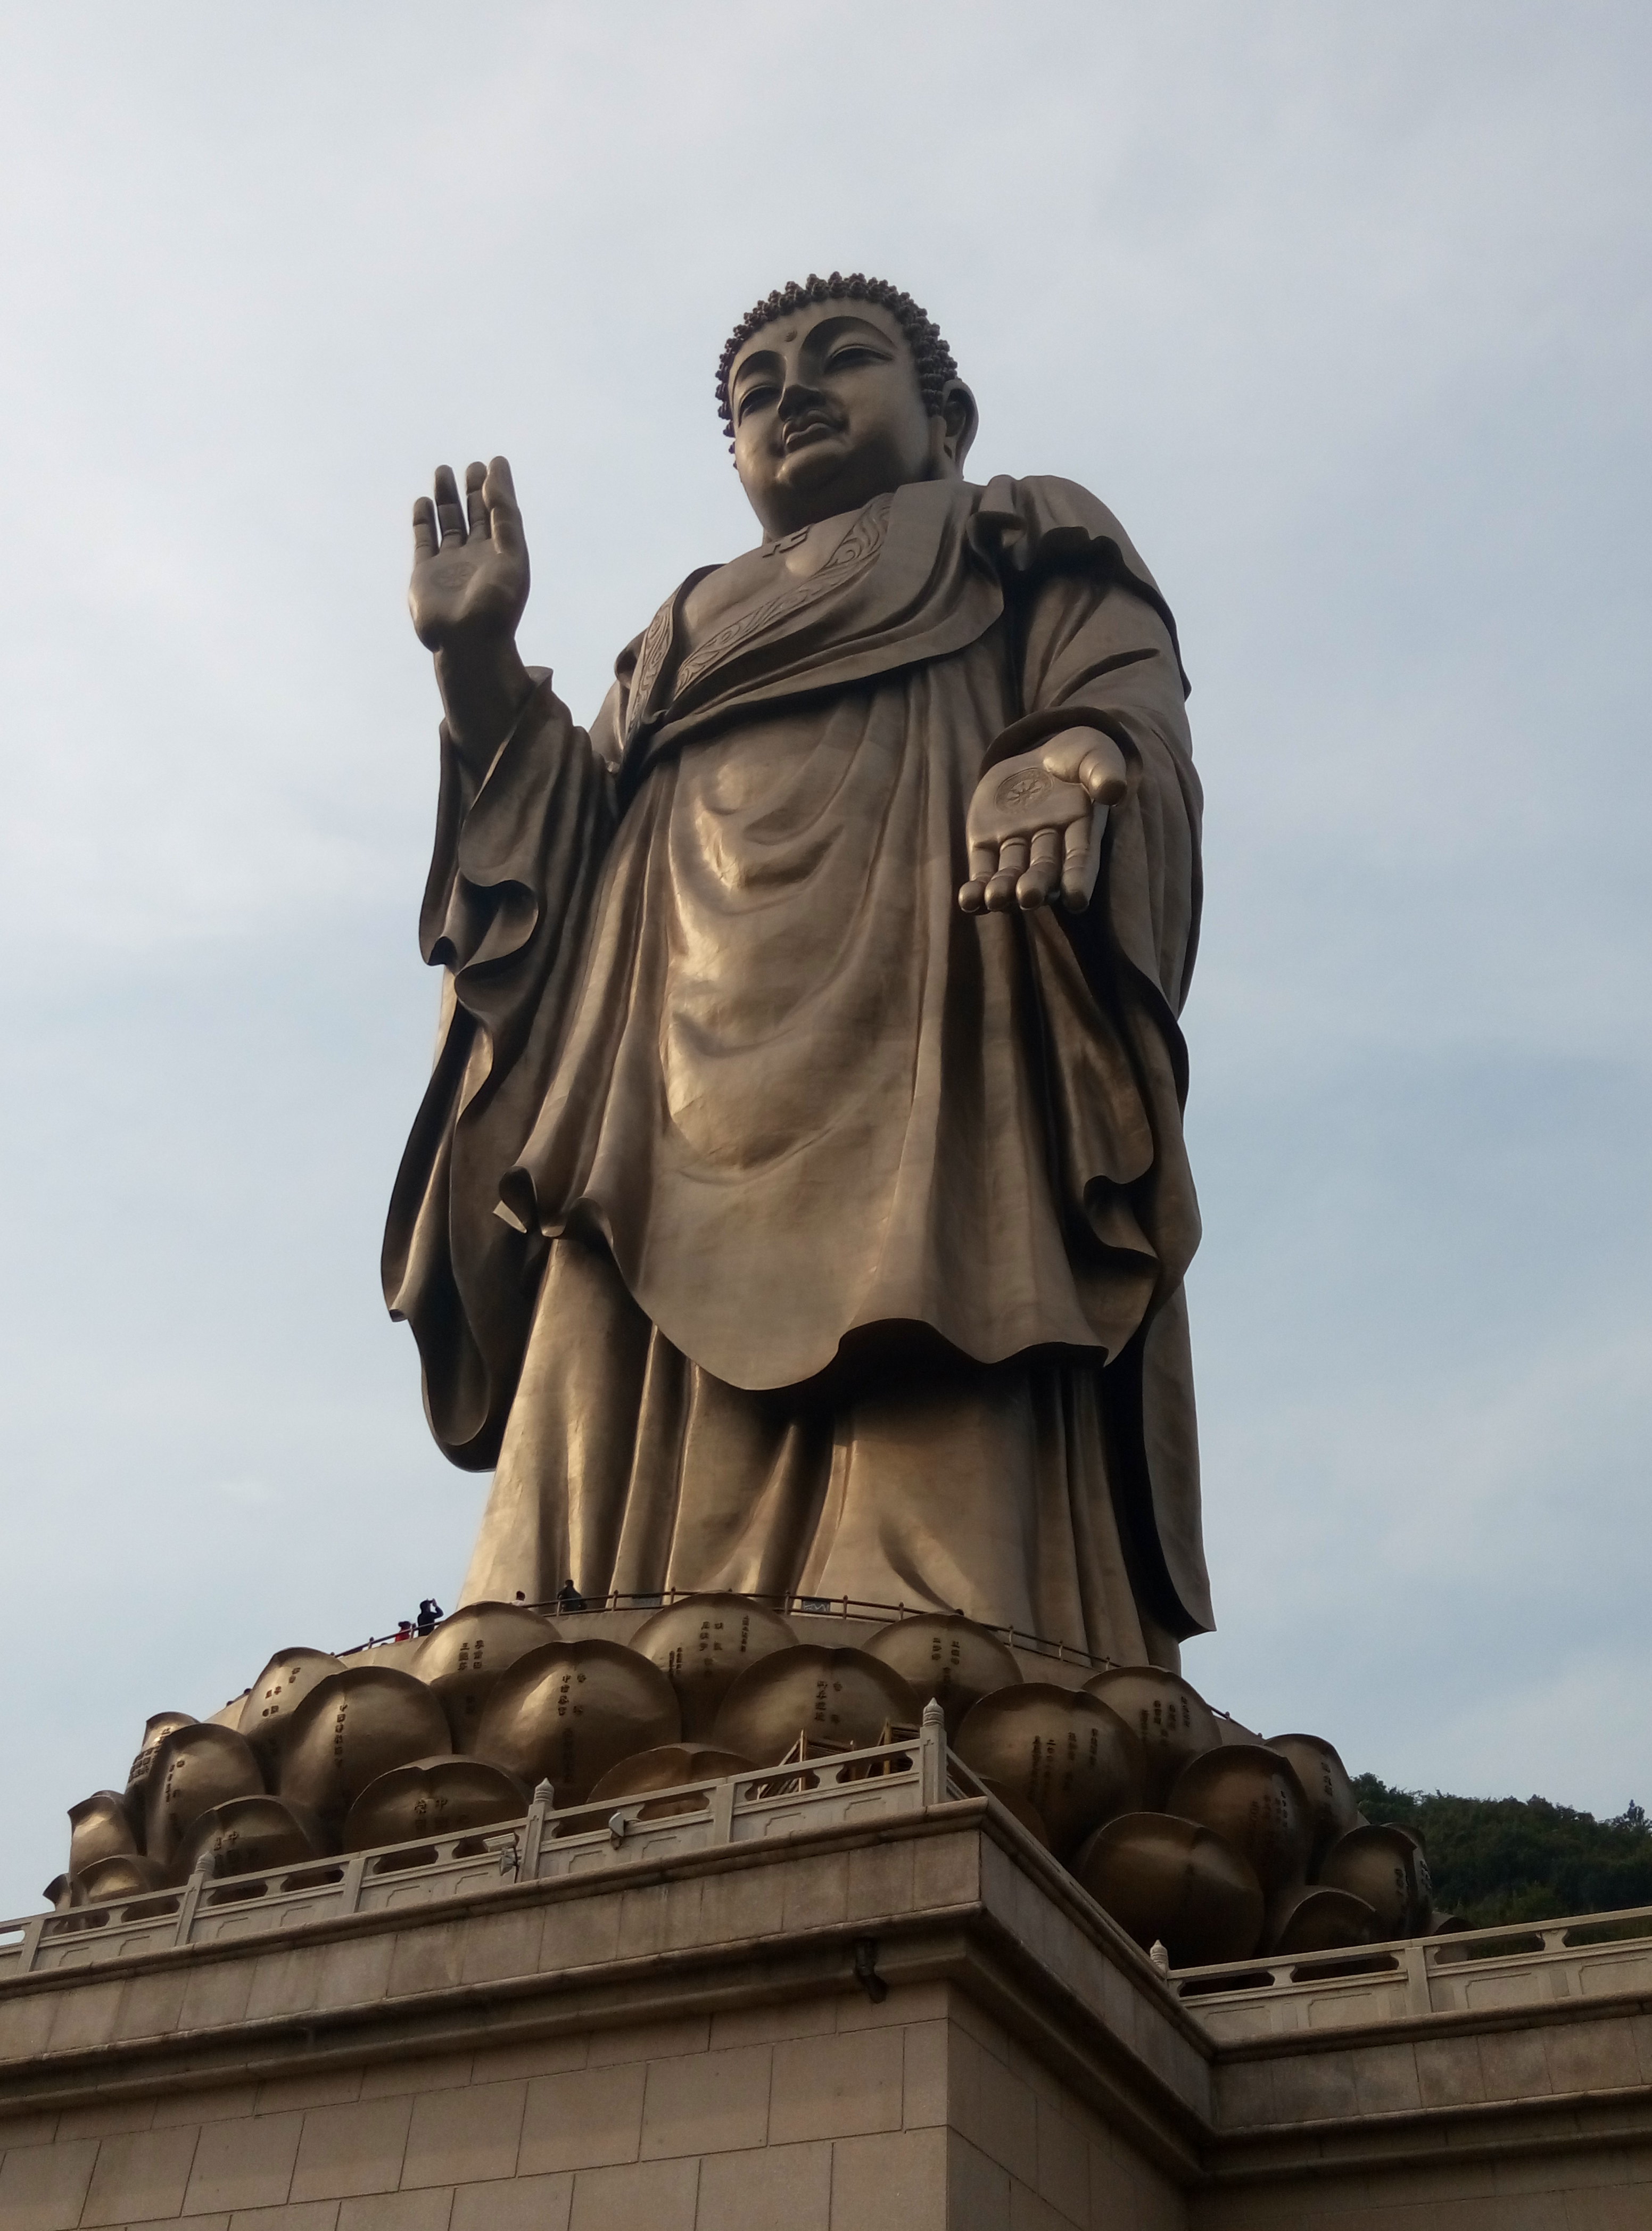 【携程攻略】无锡灵山大佛景点,第一次去看这种巨大佛像。由于不信佛，所以说实话没有虔诚的心，但是…